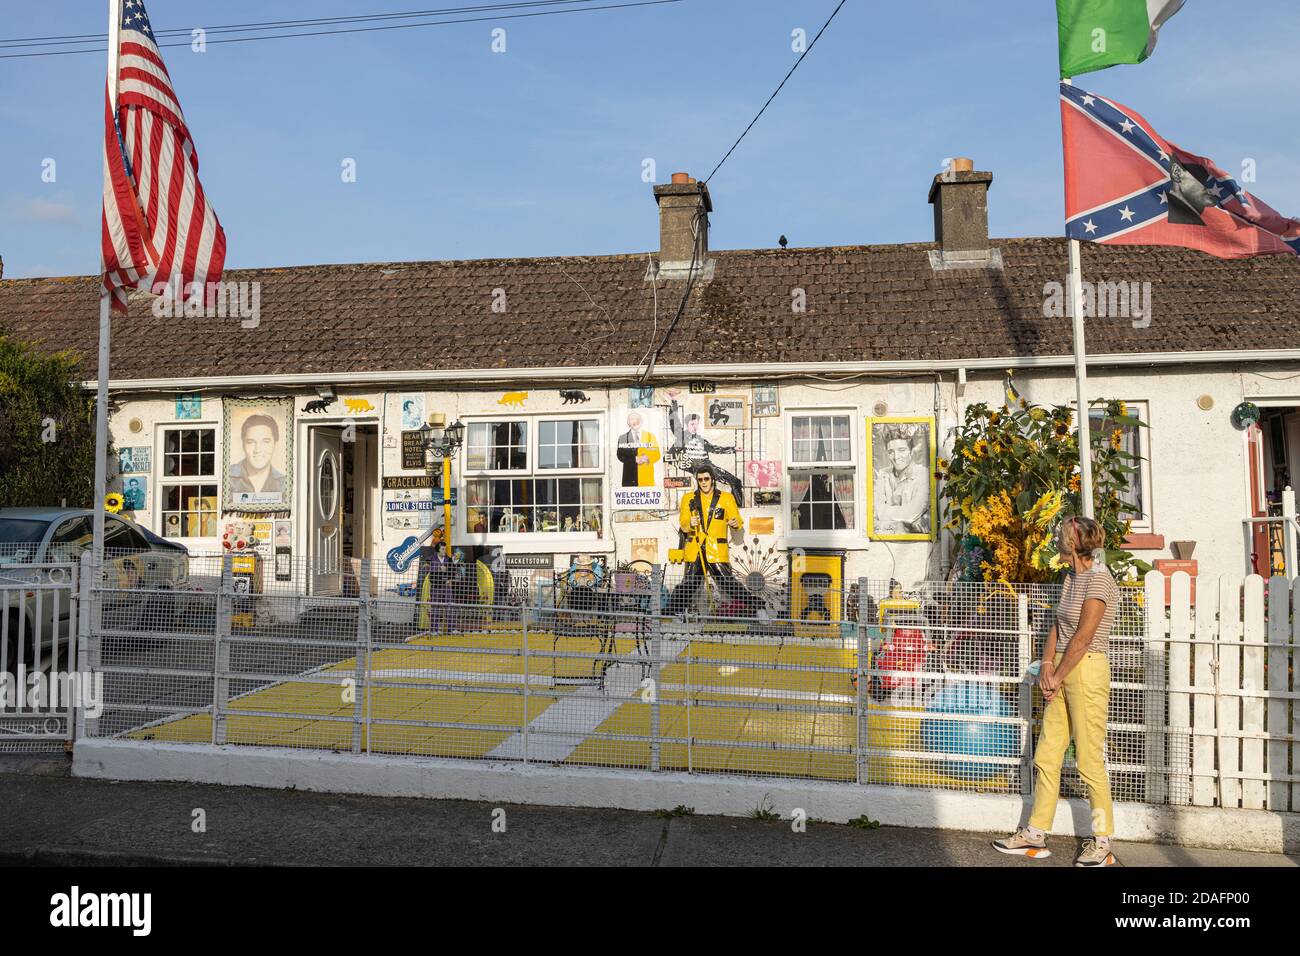 Casa Elvis, decorada con objetos de interés y banderas americanas, en Kilkenny, condado de Kilkenny, Irlanda Foto de stock